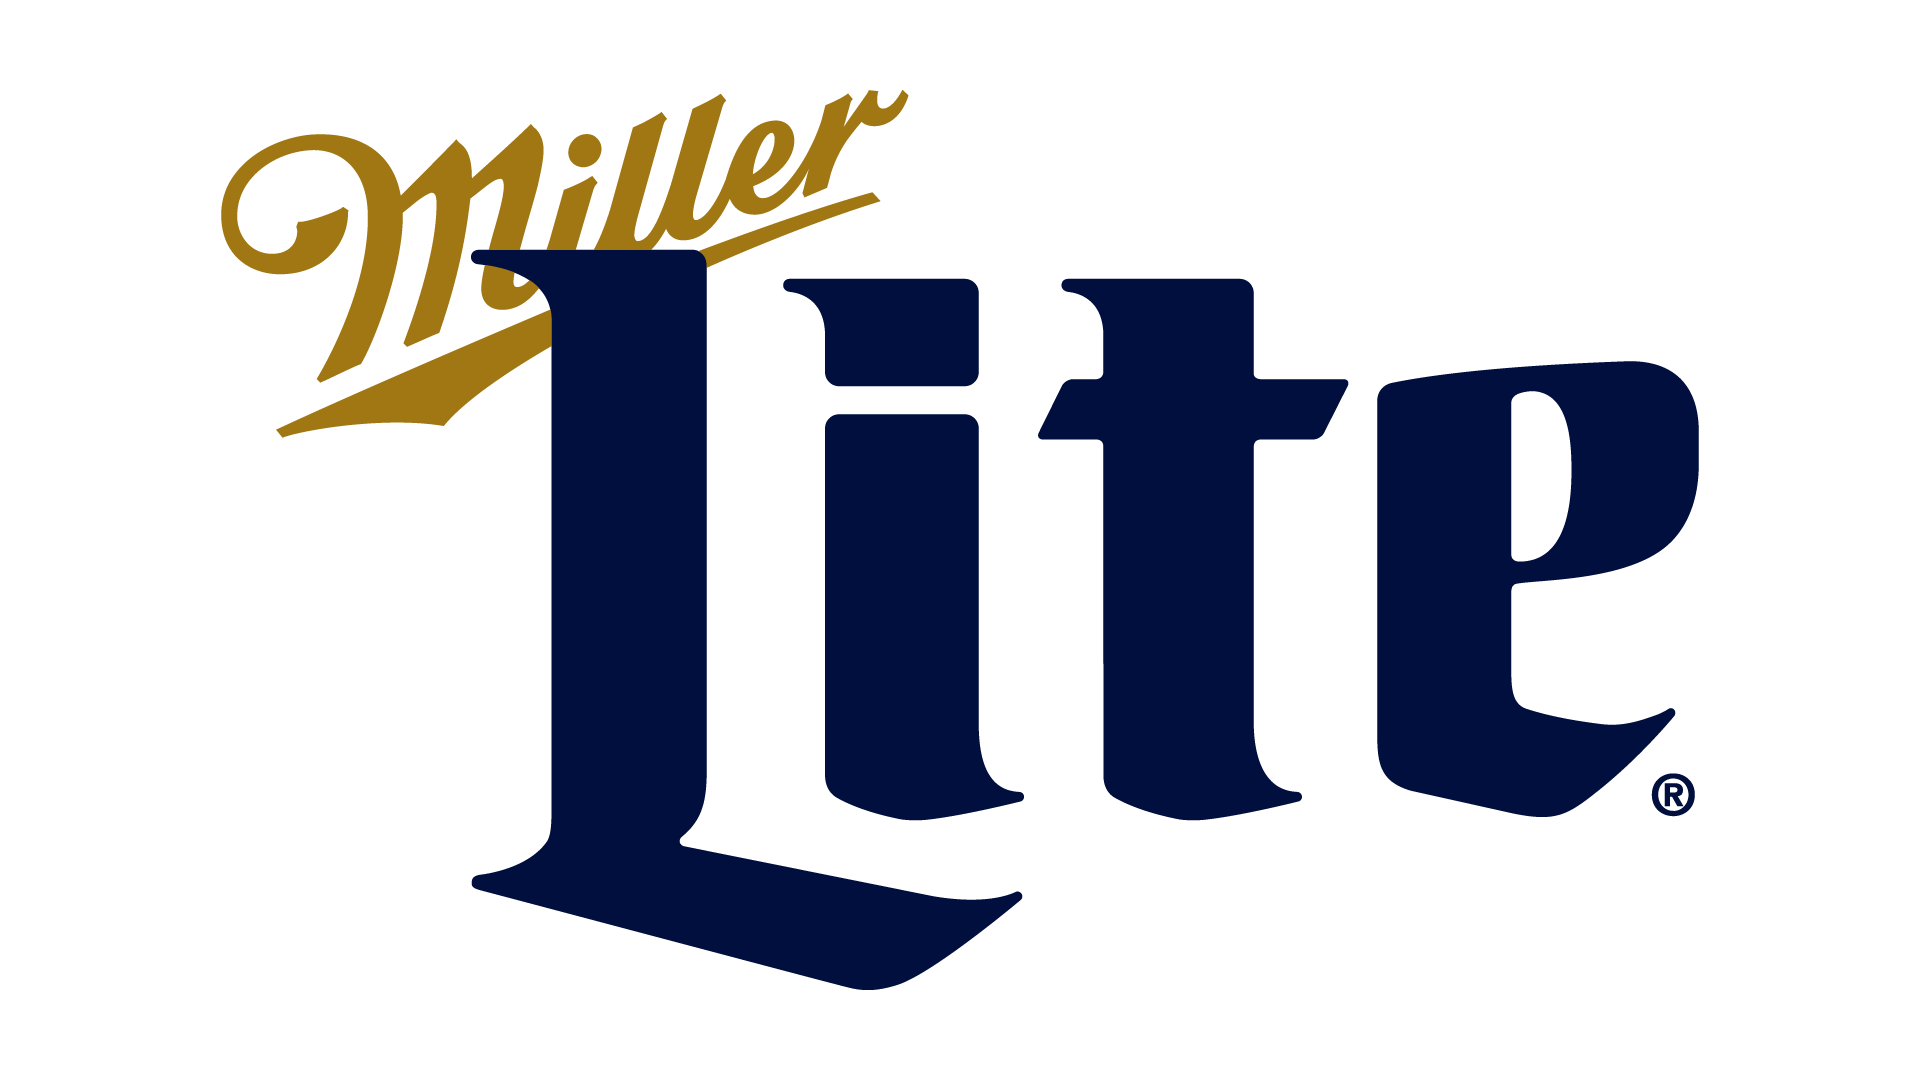 Miller Lite Wallpapers